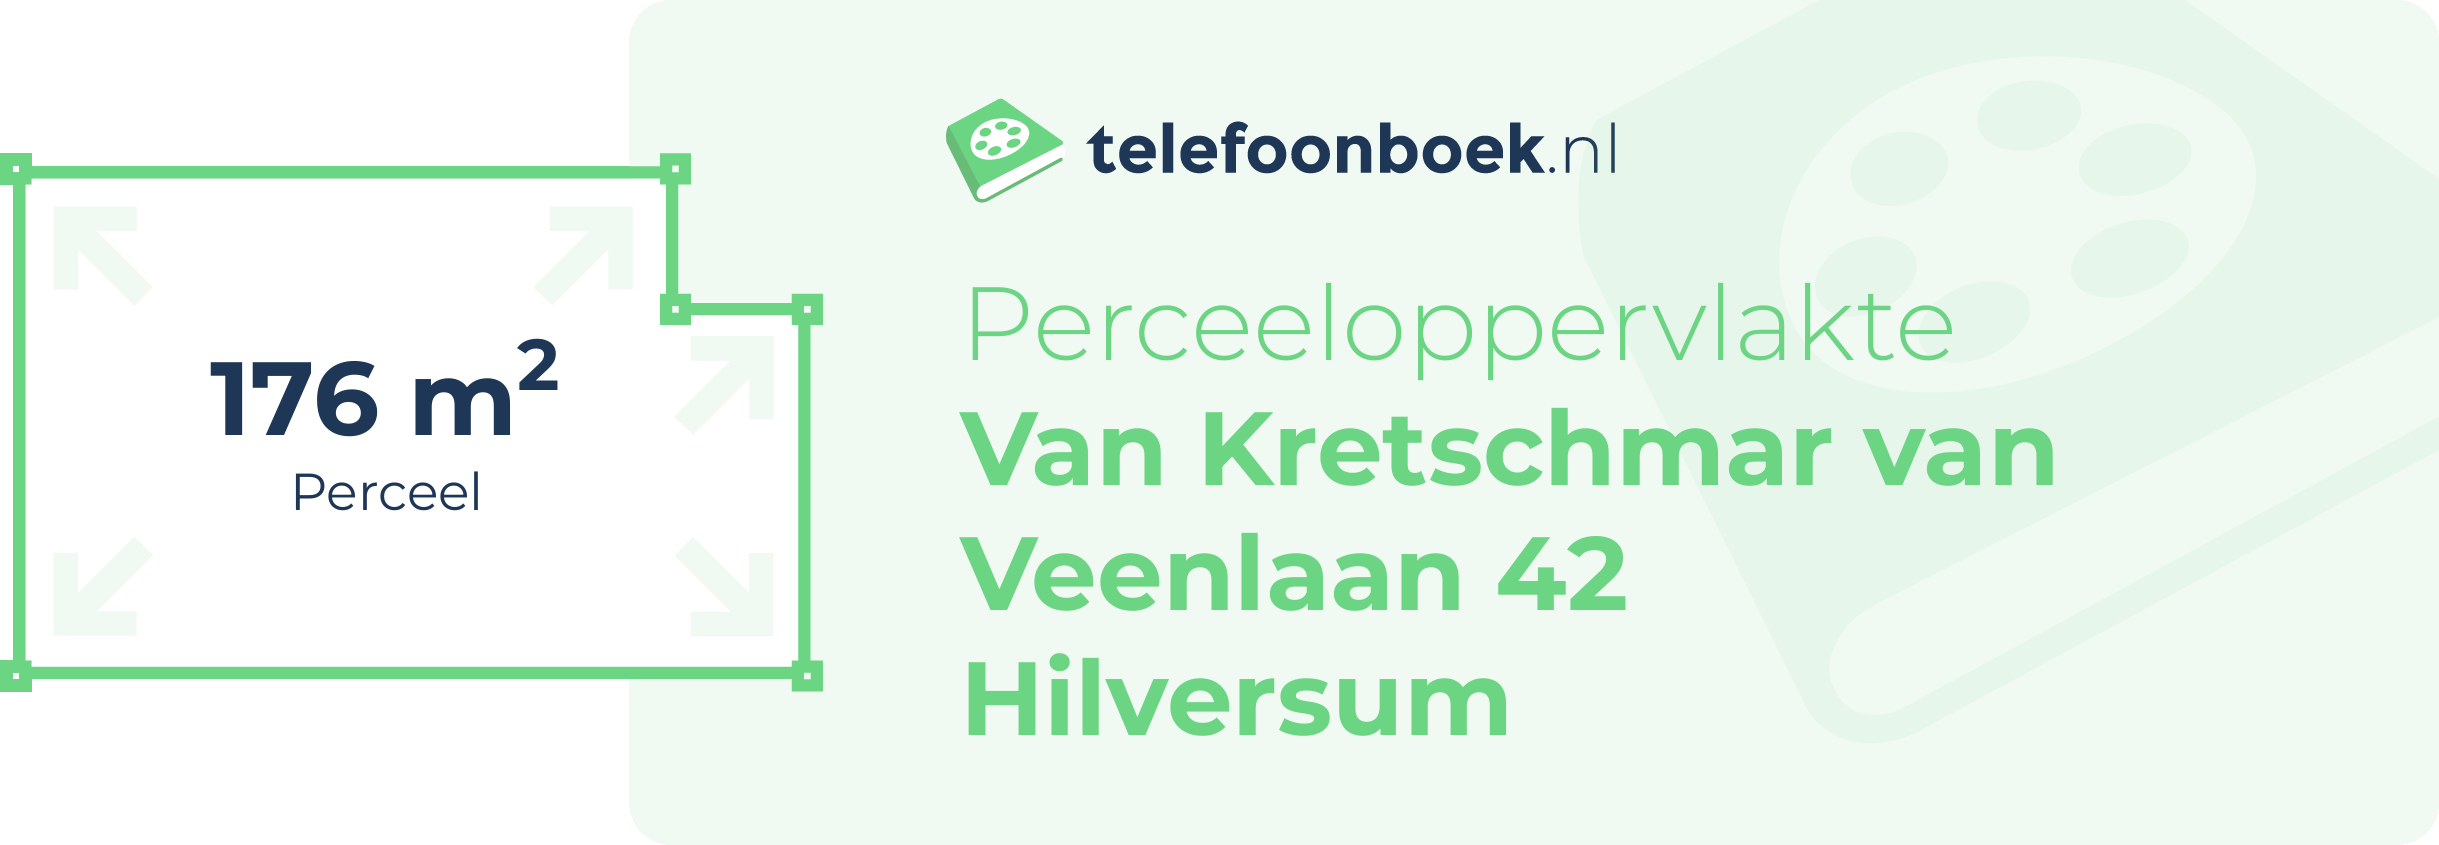 Perceeloppervlakte Van Kretschmar Van Veenlaan 42 Hilversum